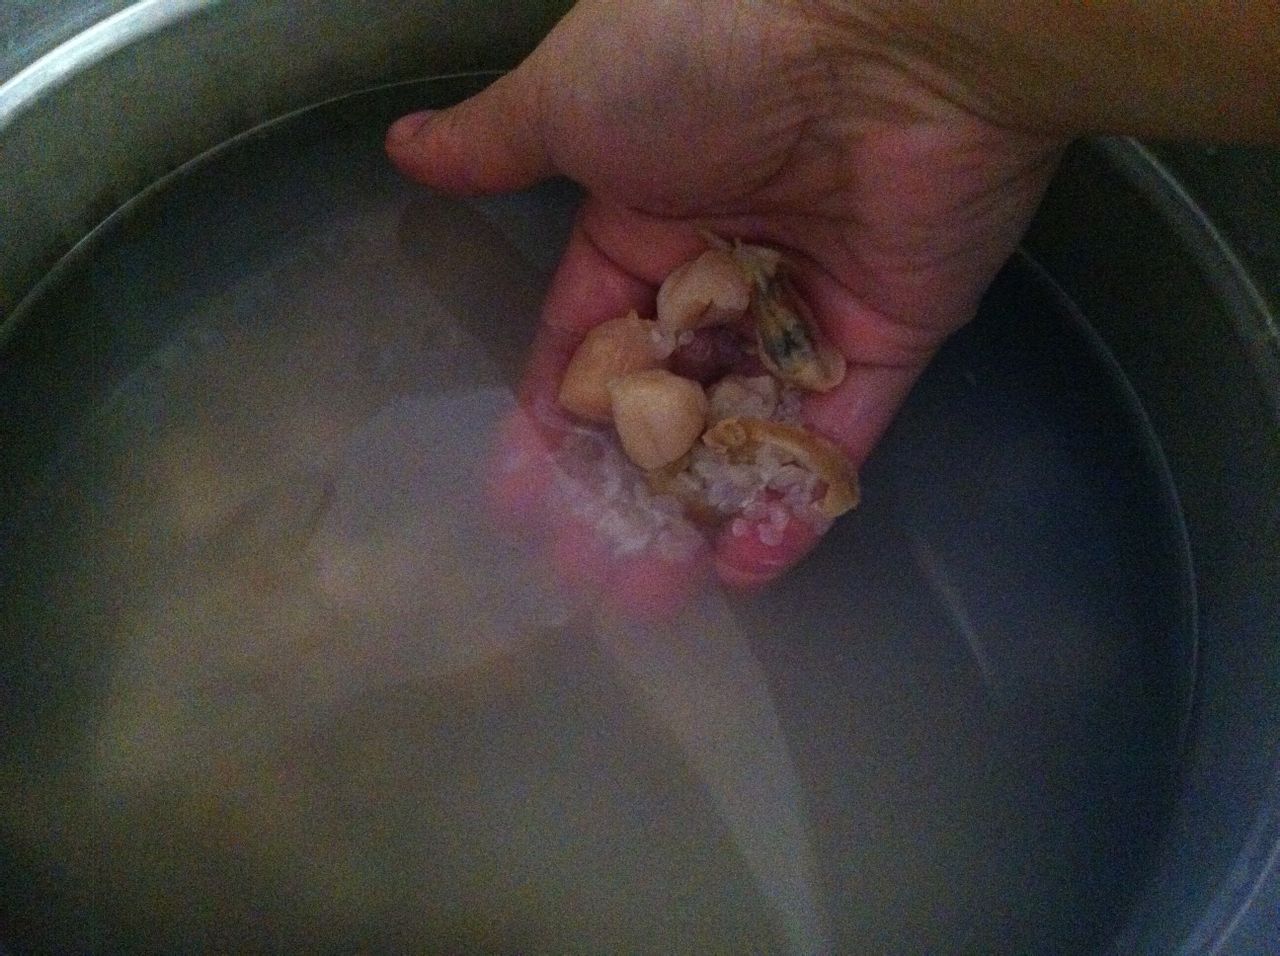 干貝蛤蜊海鮮粥